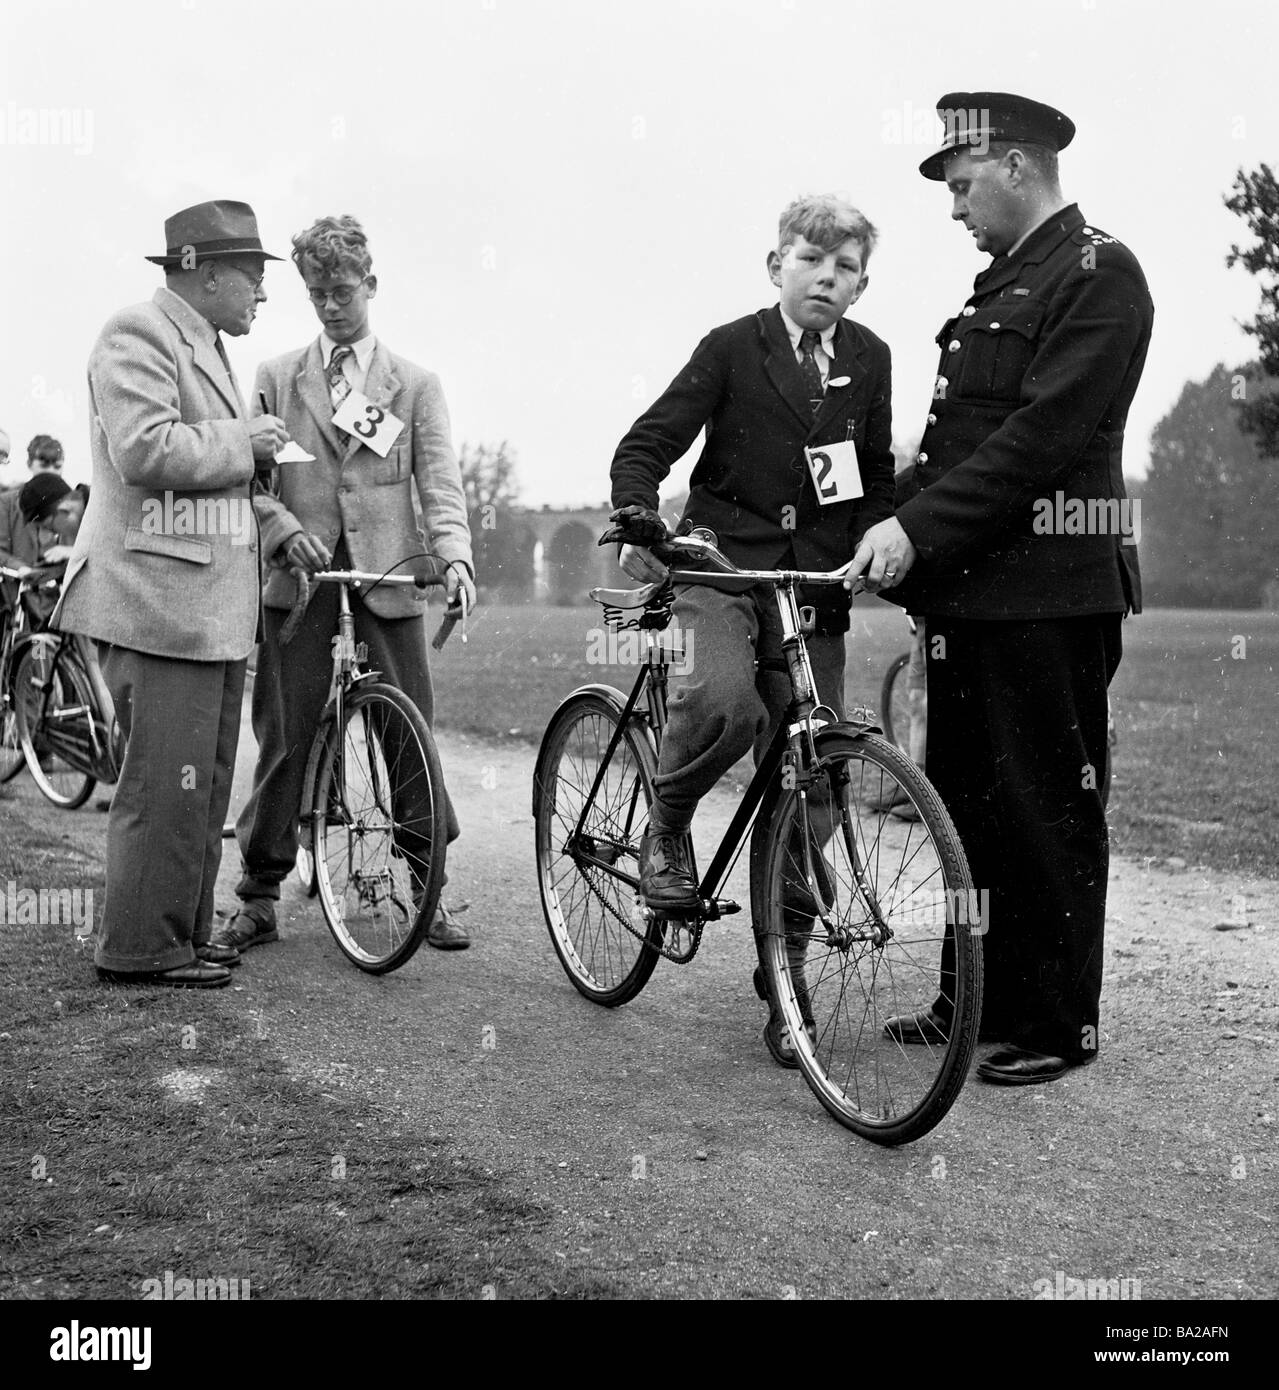 1950s, historique, à l'extérieur sur une voie un officiel vérifie les noms comme un policier commence les écoliers sur leur test de maîtrise du cyclisme, Londres, Angleterre. Banque D'Images